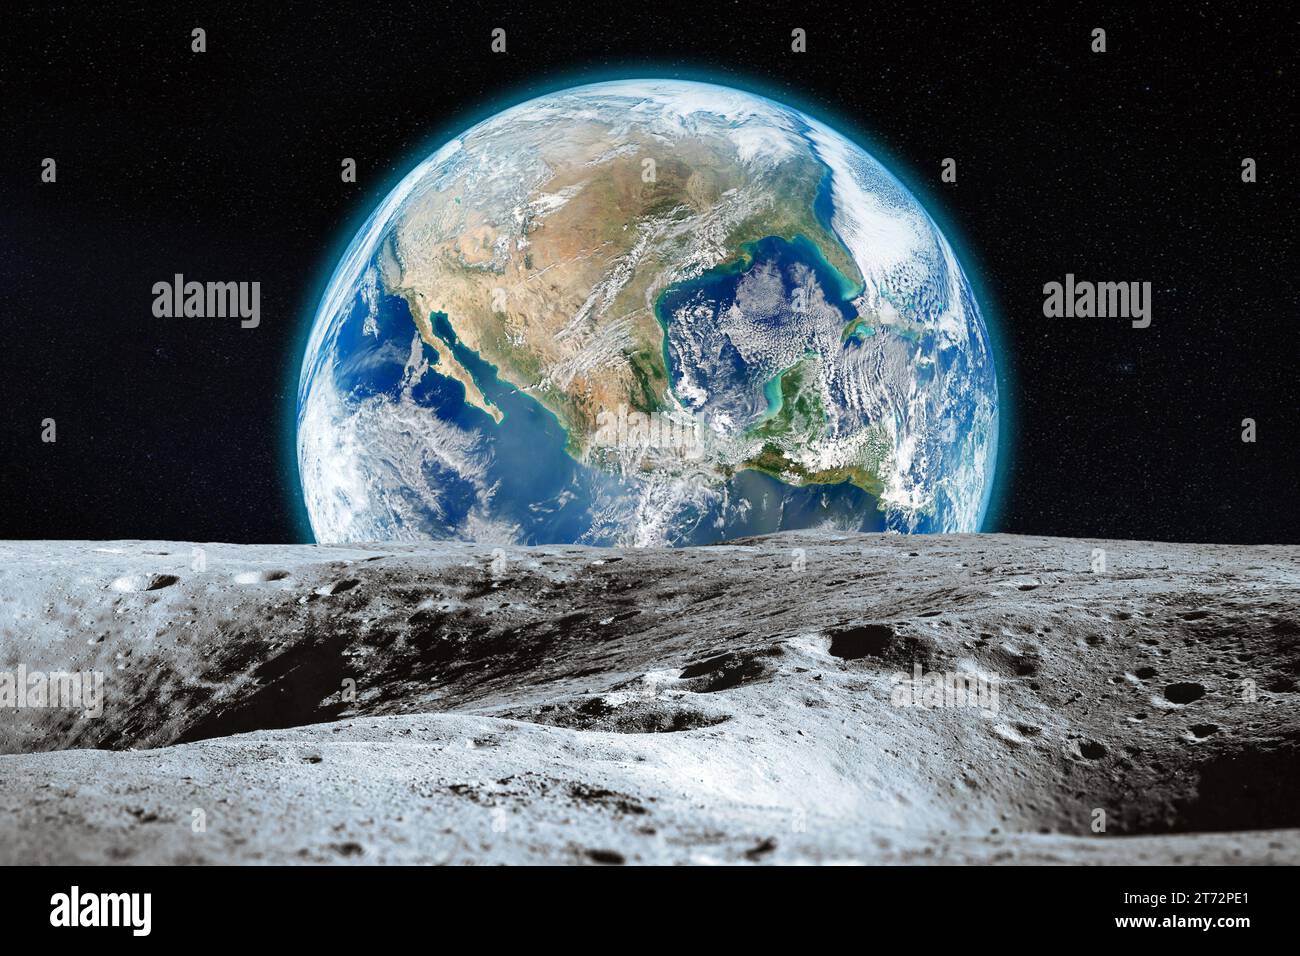 Vue de la Lune avec des cratères sur Terre dans l'espace profond. Lune et Terre. Éléments de cette image fournis par la NASA. Banque D'Images